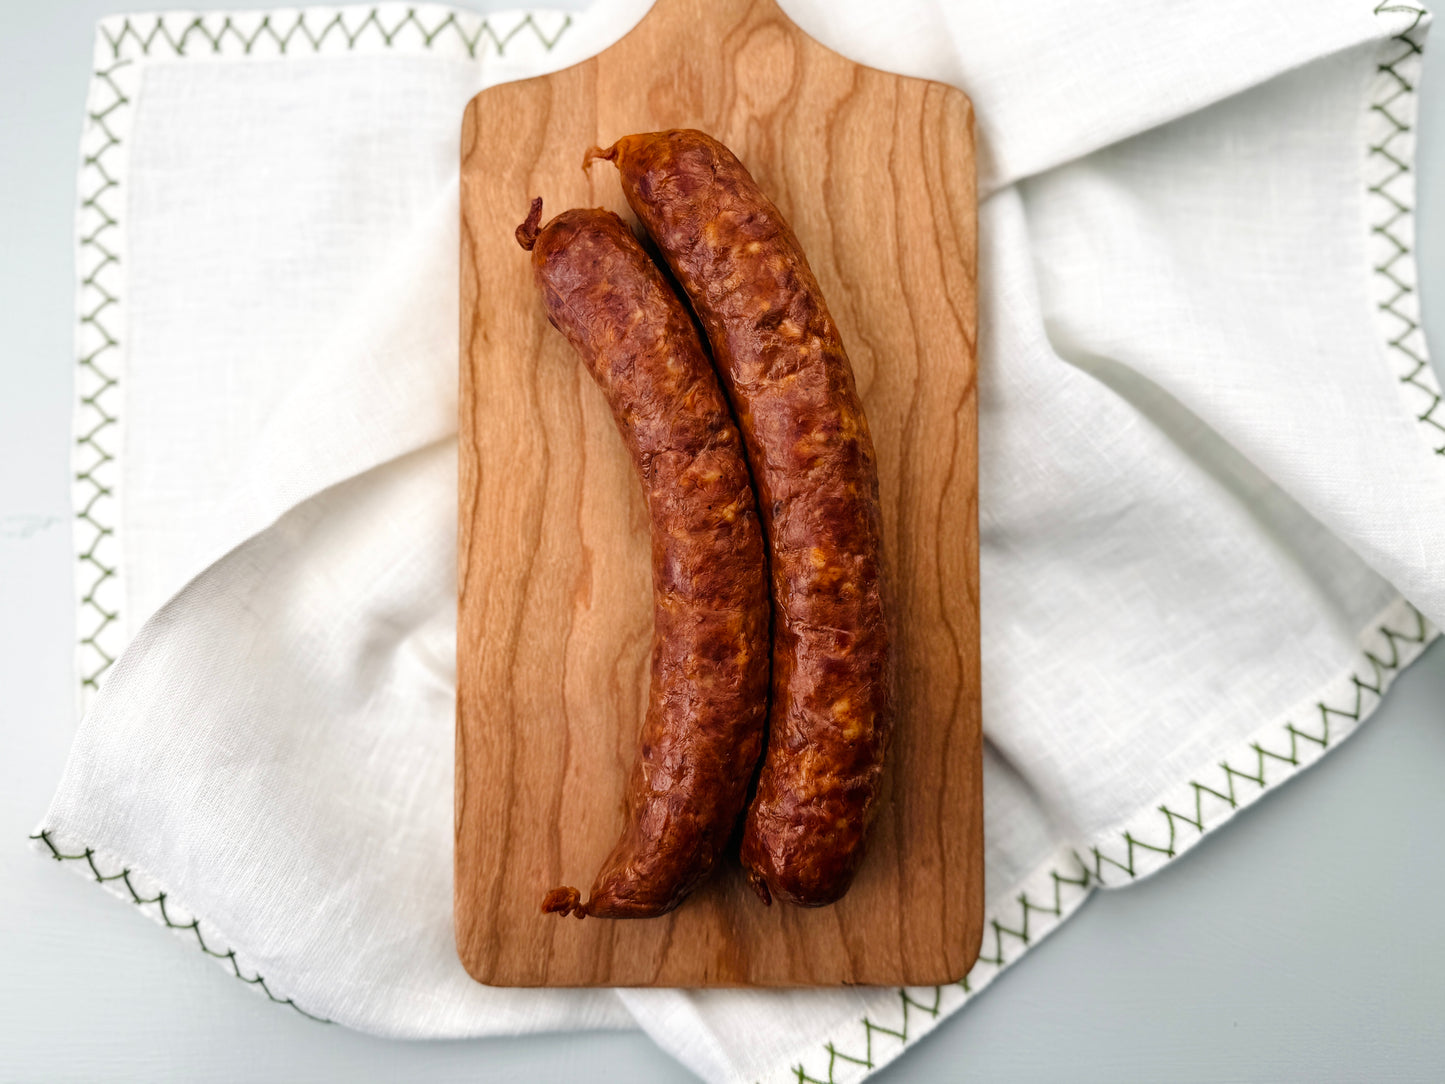 Sonny's Farm pastured heritage pork smoked chorizo sausages